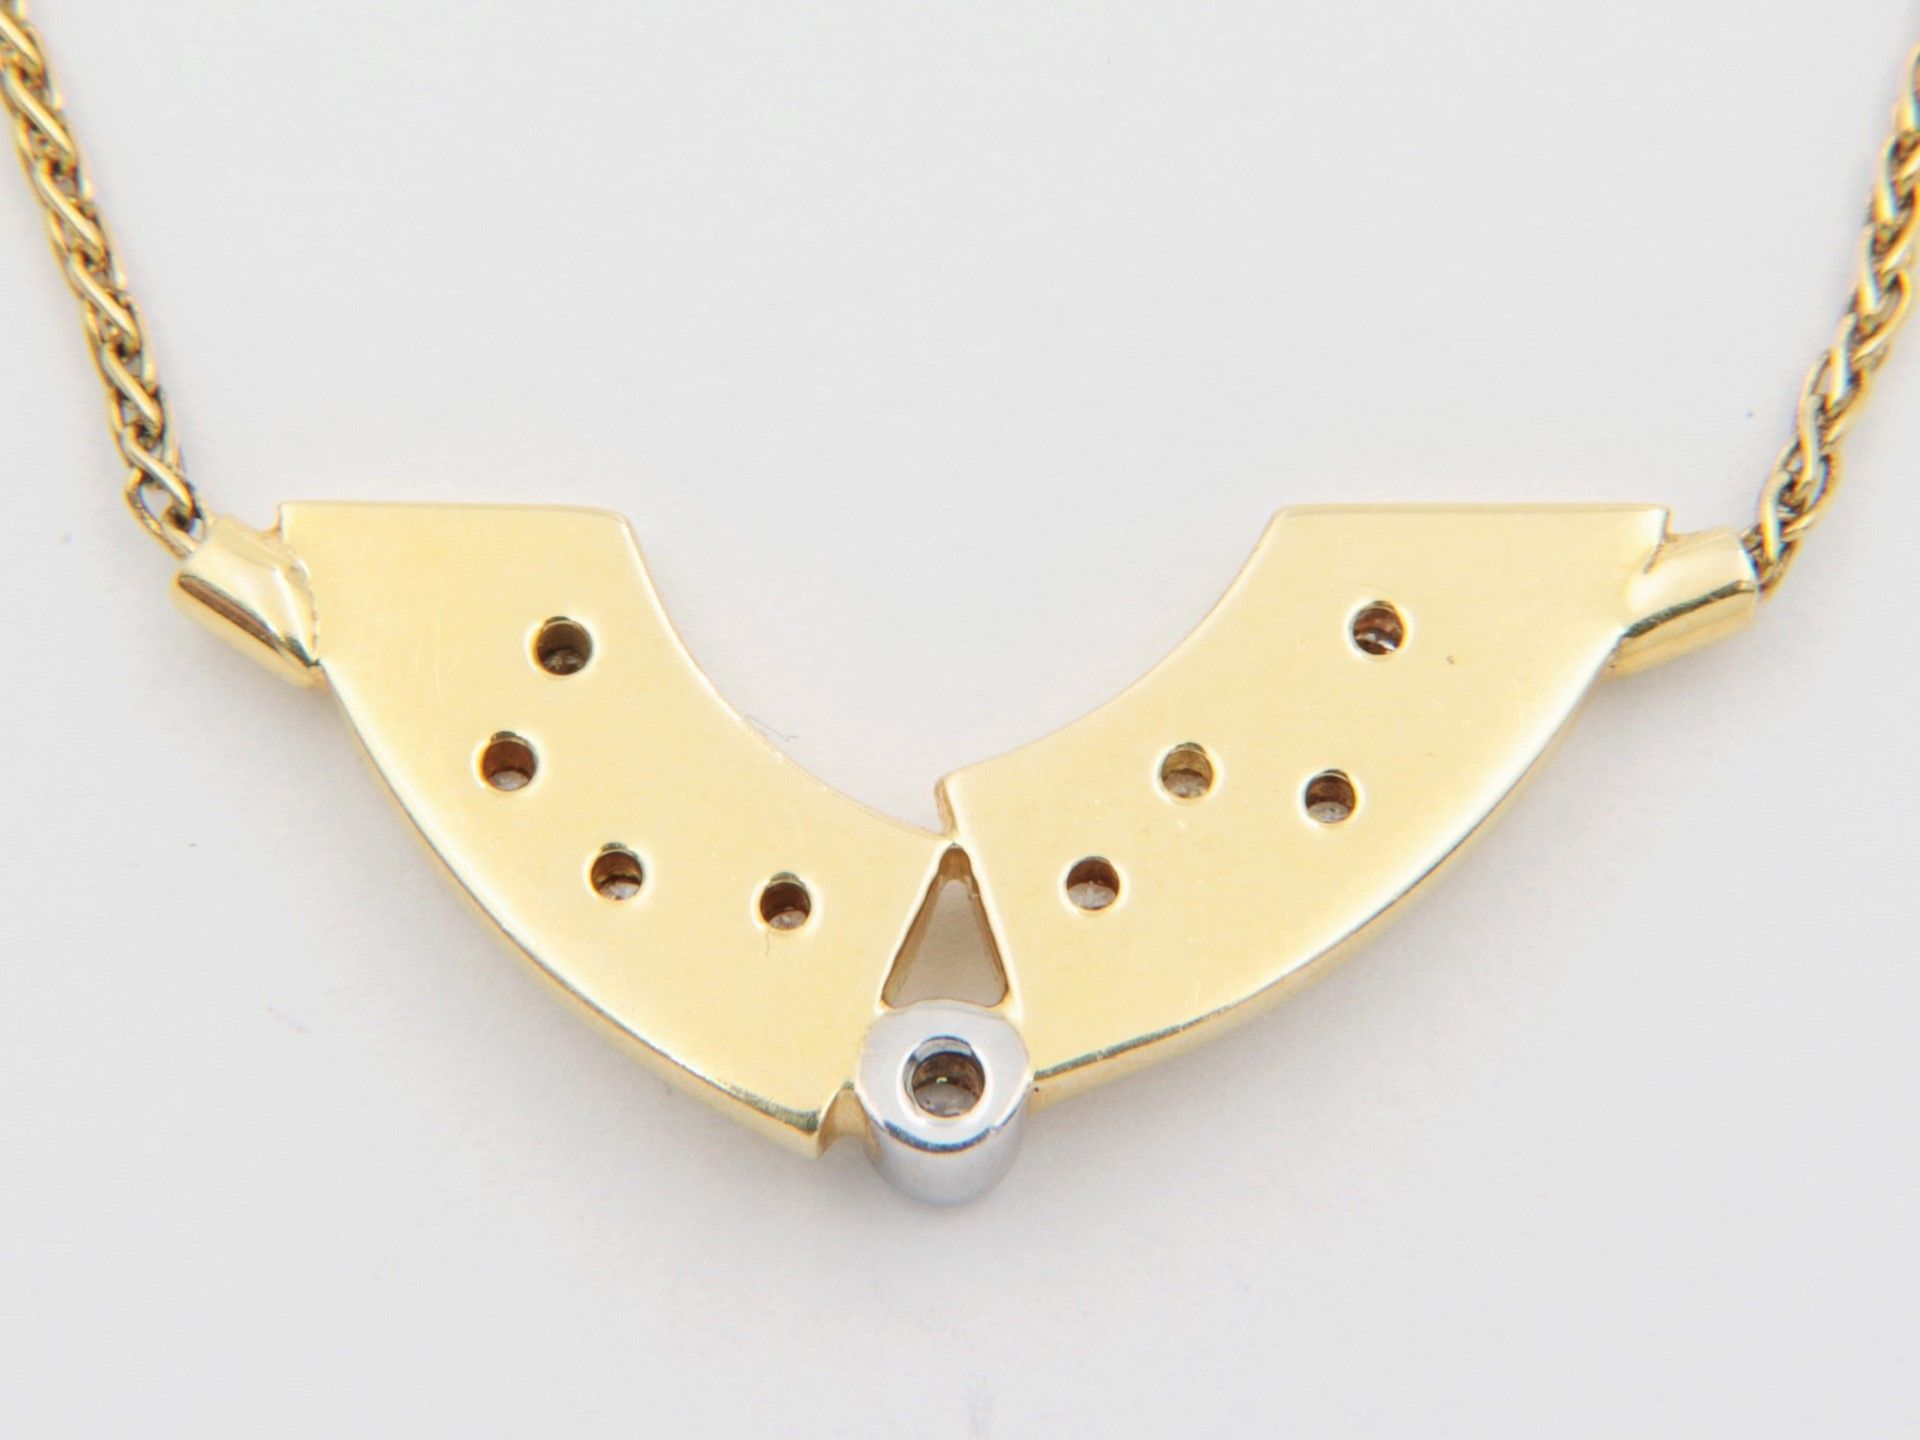 Diamant - Collier GG 750, sichelförmiges Mittelteil, durchbrochen ausgearbeitet, bese - Image 2 of 2